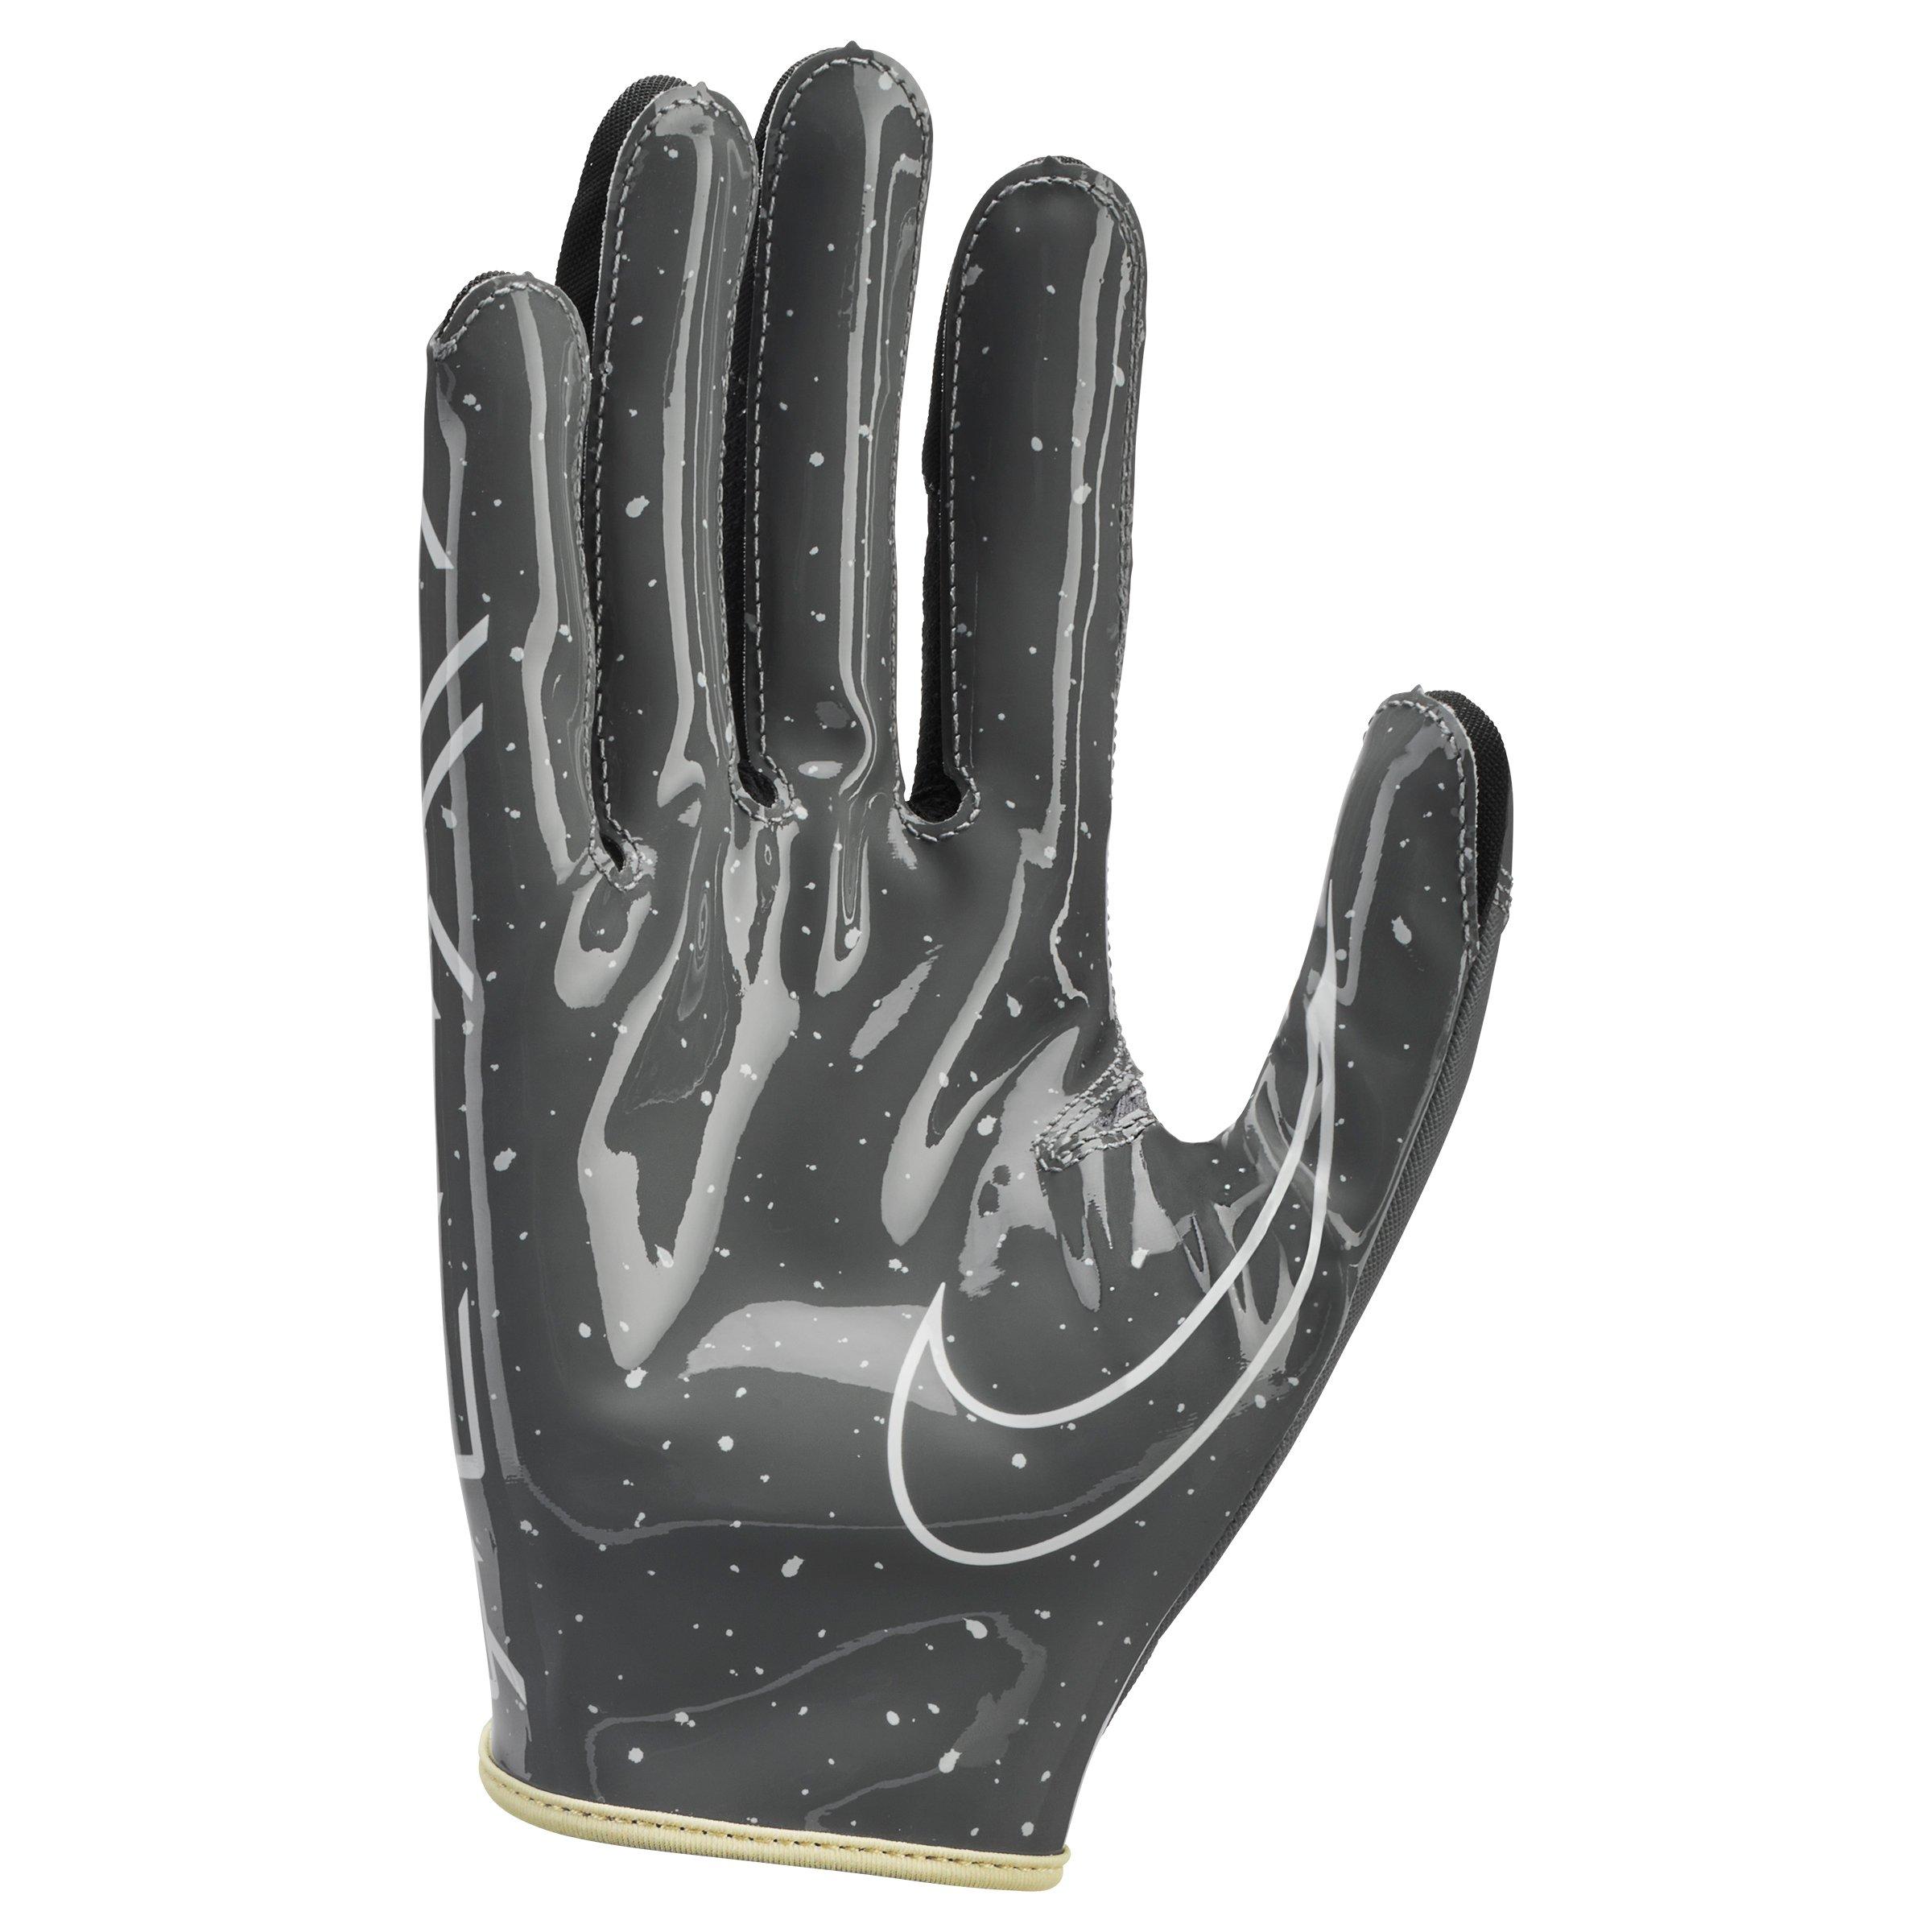 Senior Vapor Jet 7.0 Energy Football Gloves from Nike